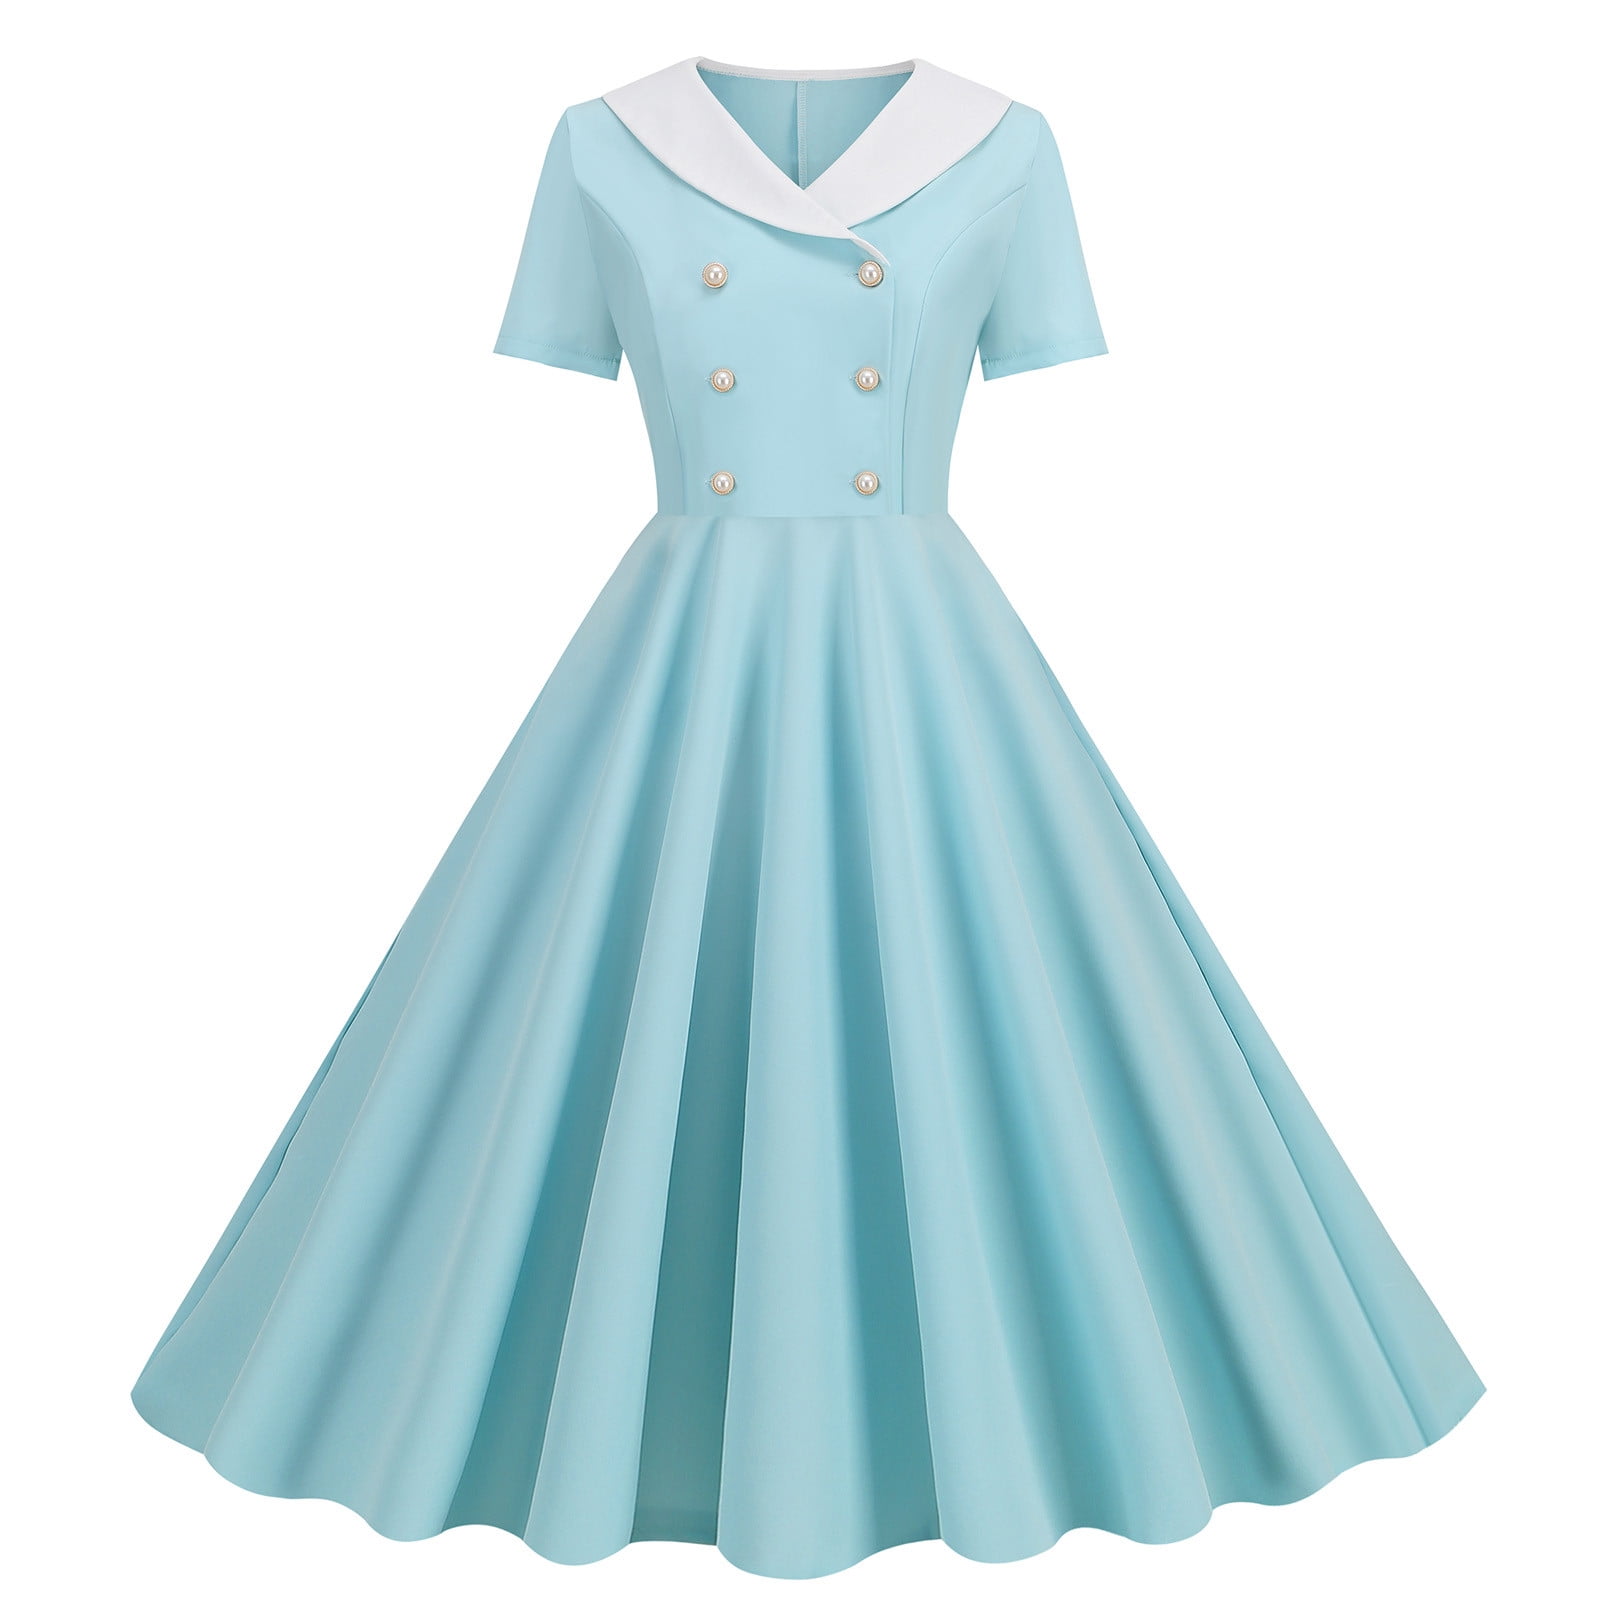 Gaecuw 1940s Dresses for Women Vintage V Neck Short Sleeve Retro ...